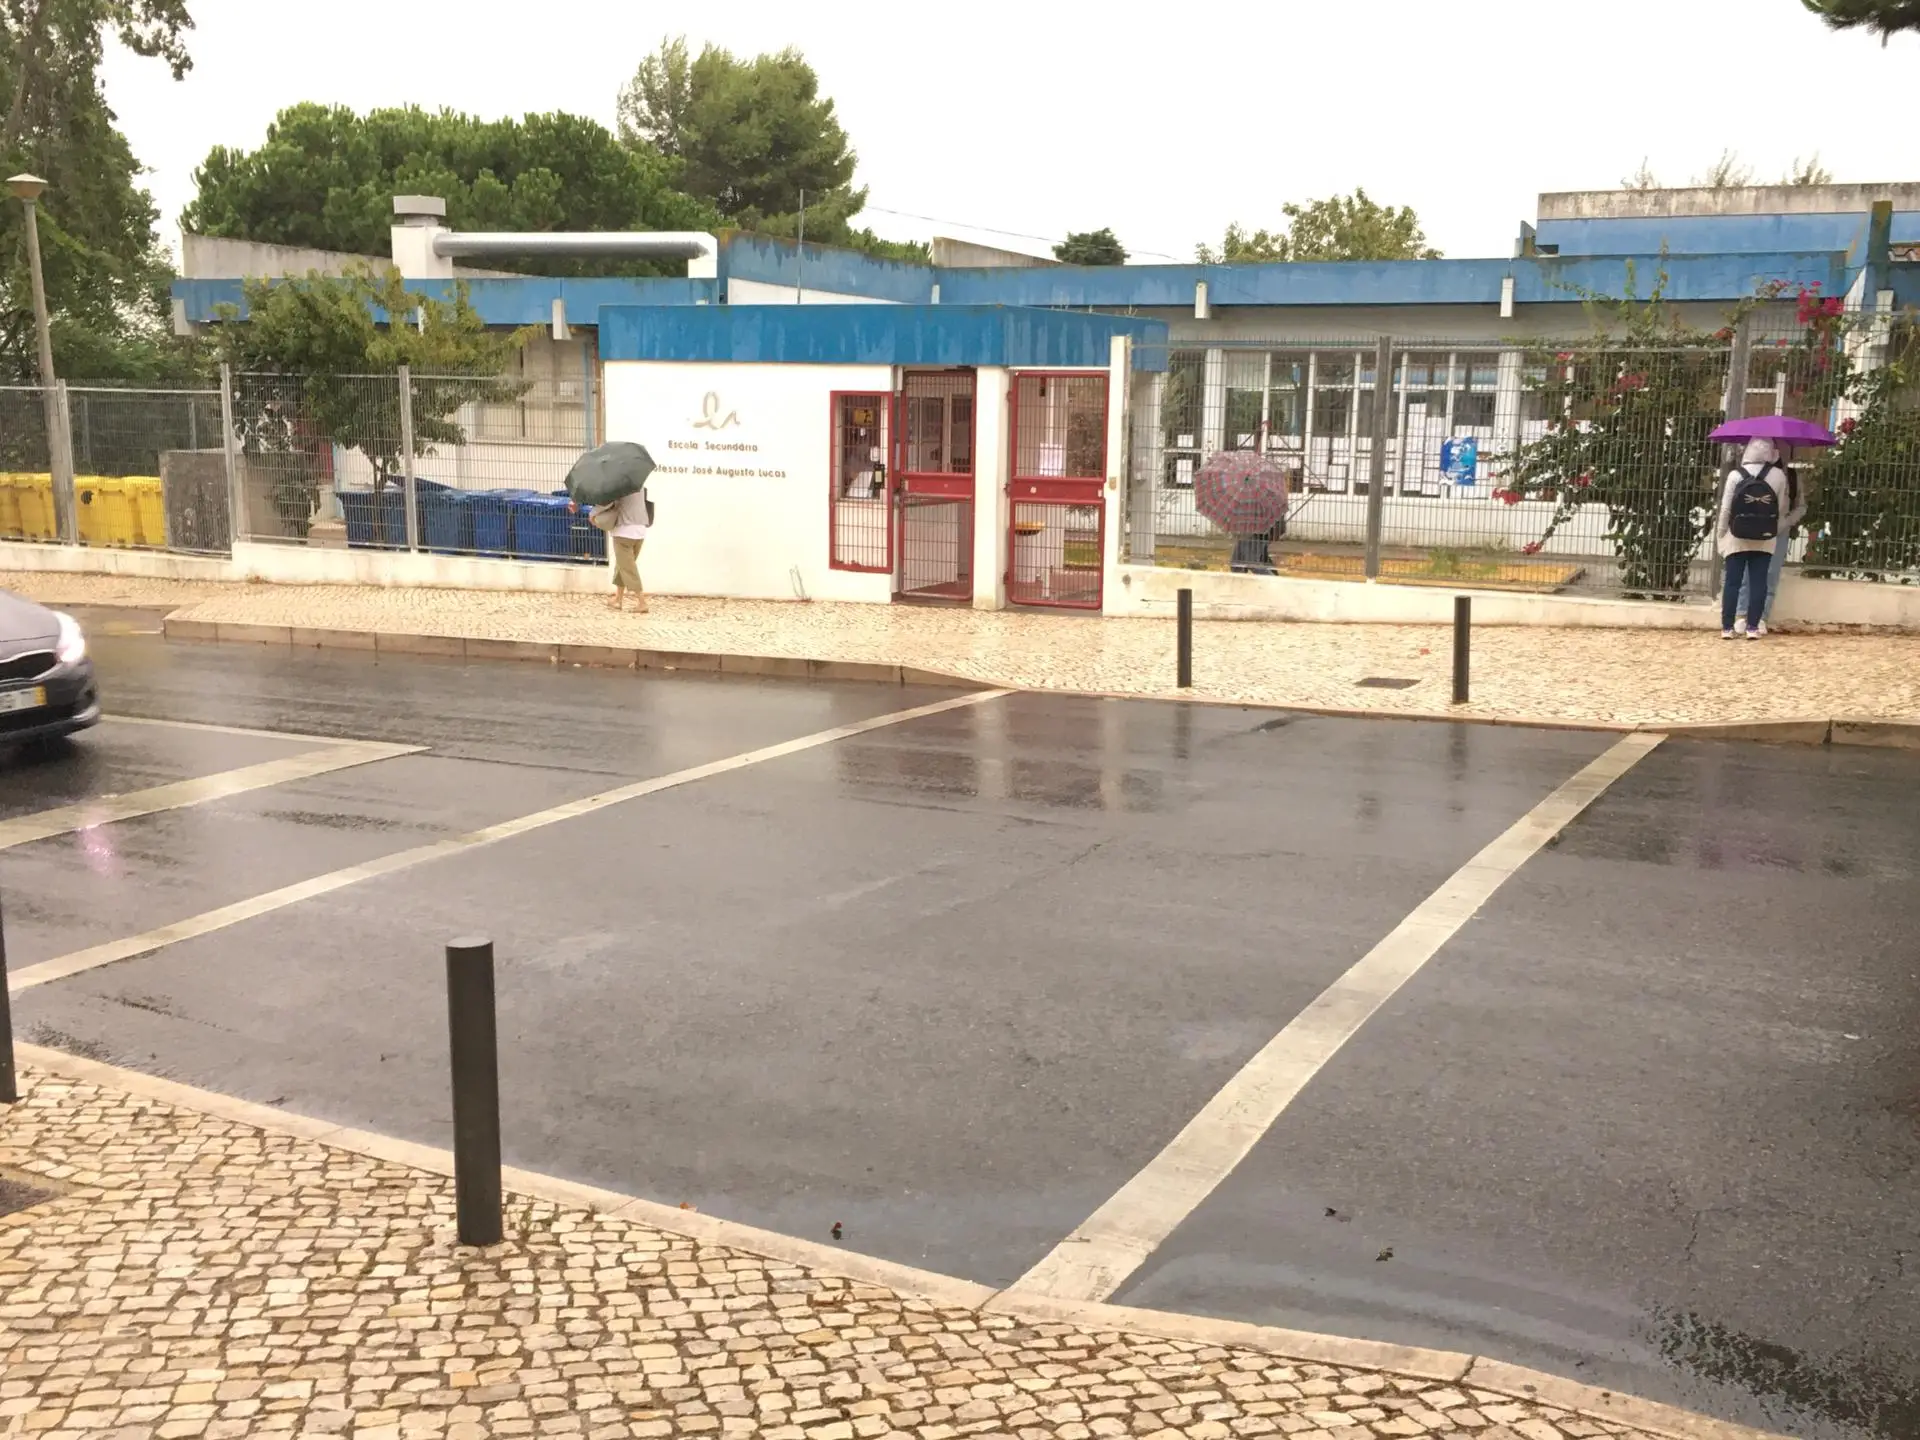 Greve de professores fecha escola em Linda-a-Velha, Oeiras